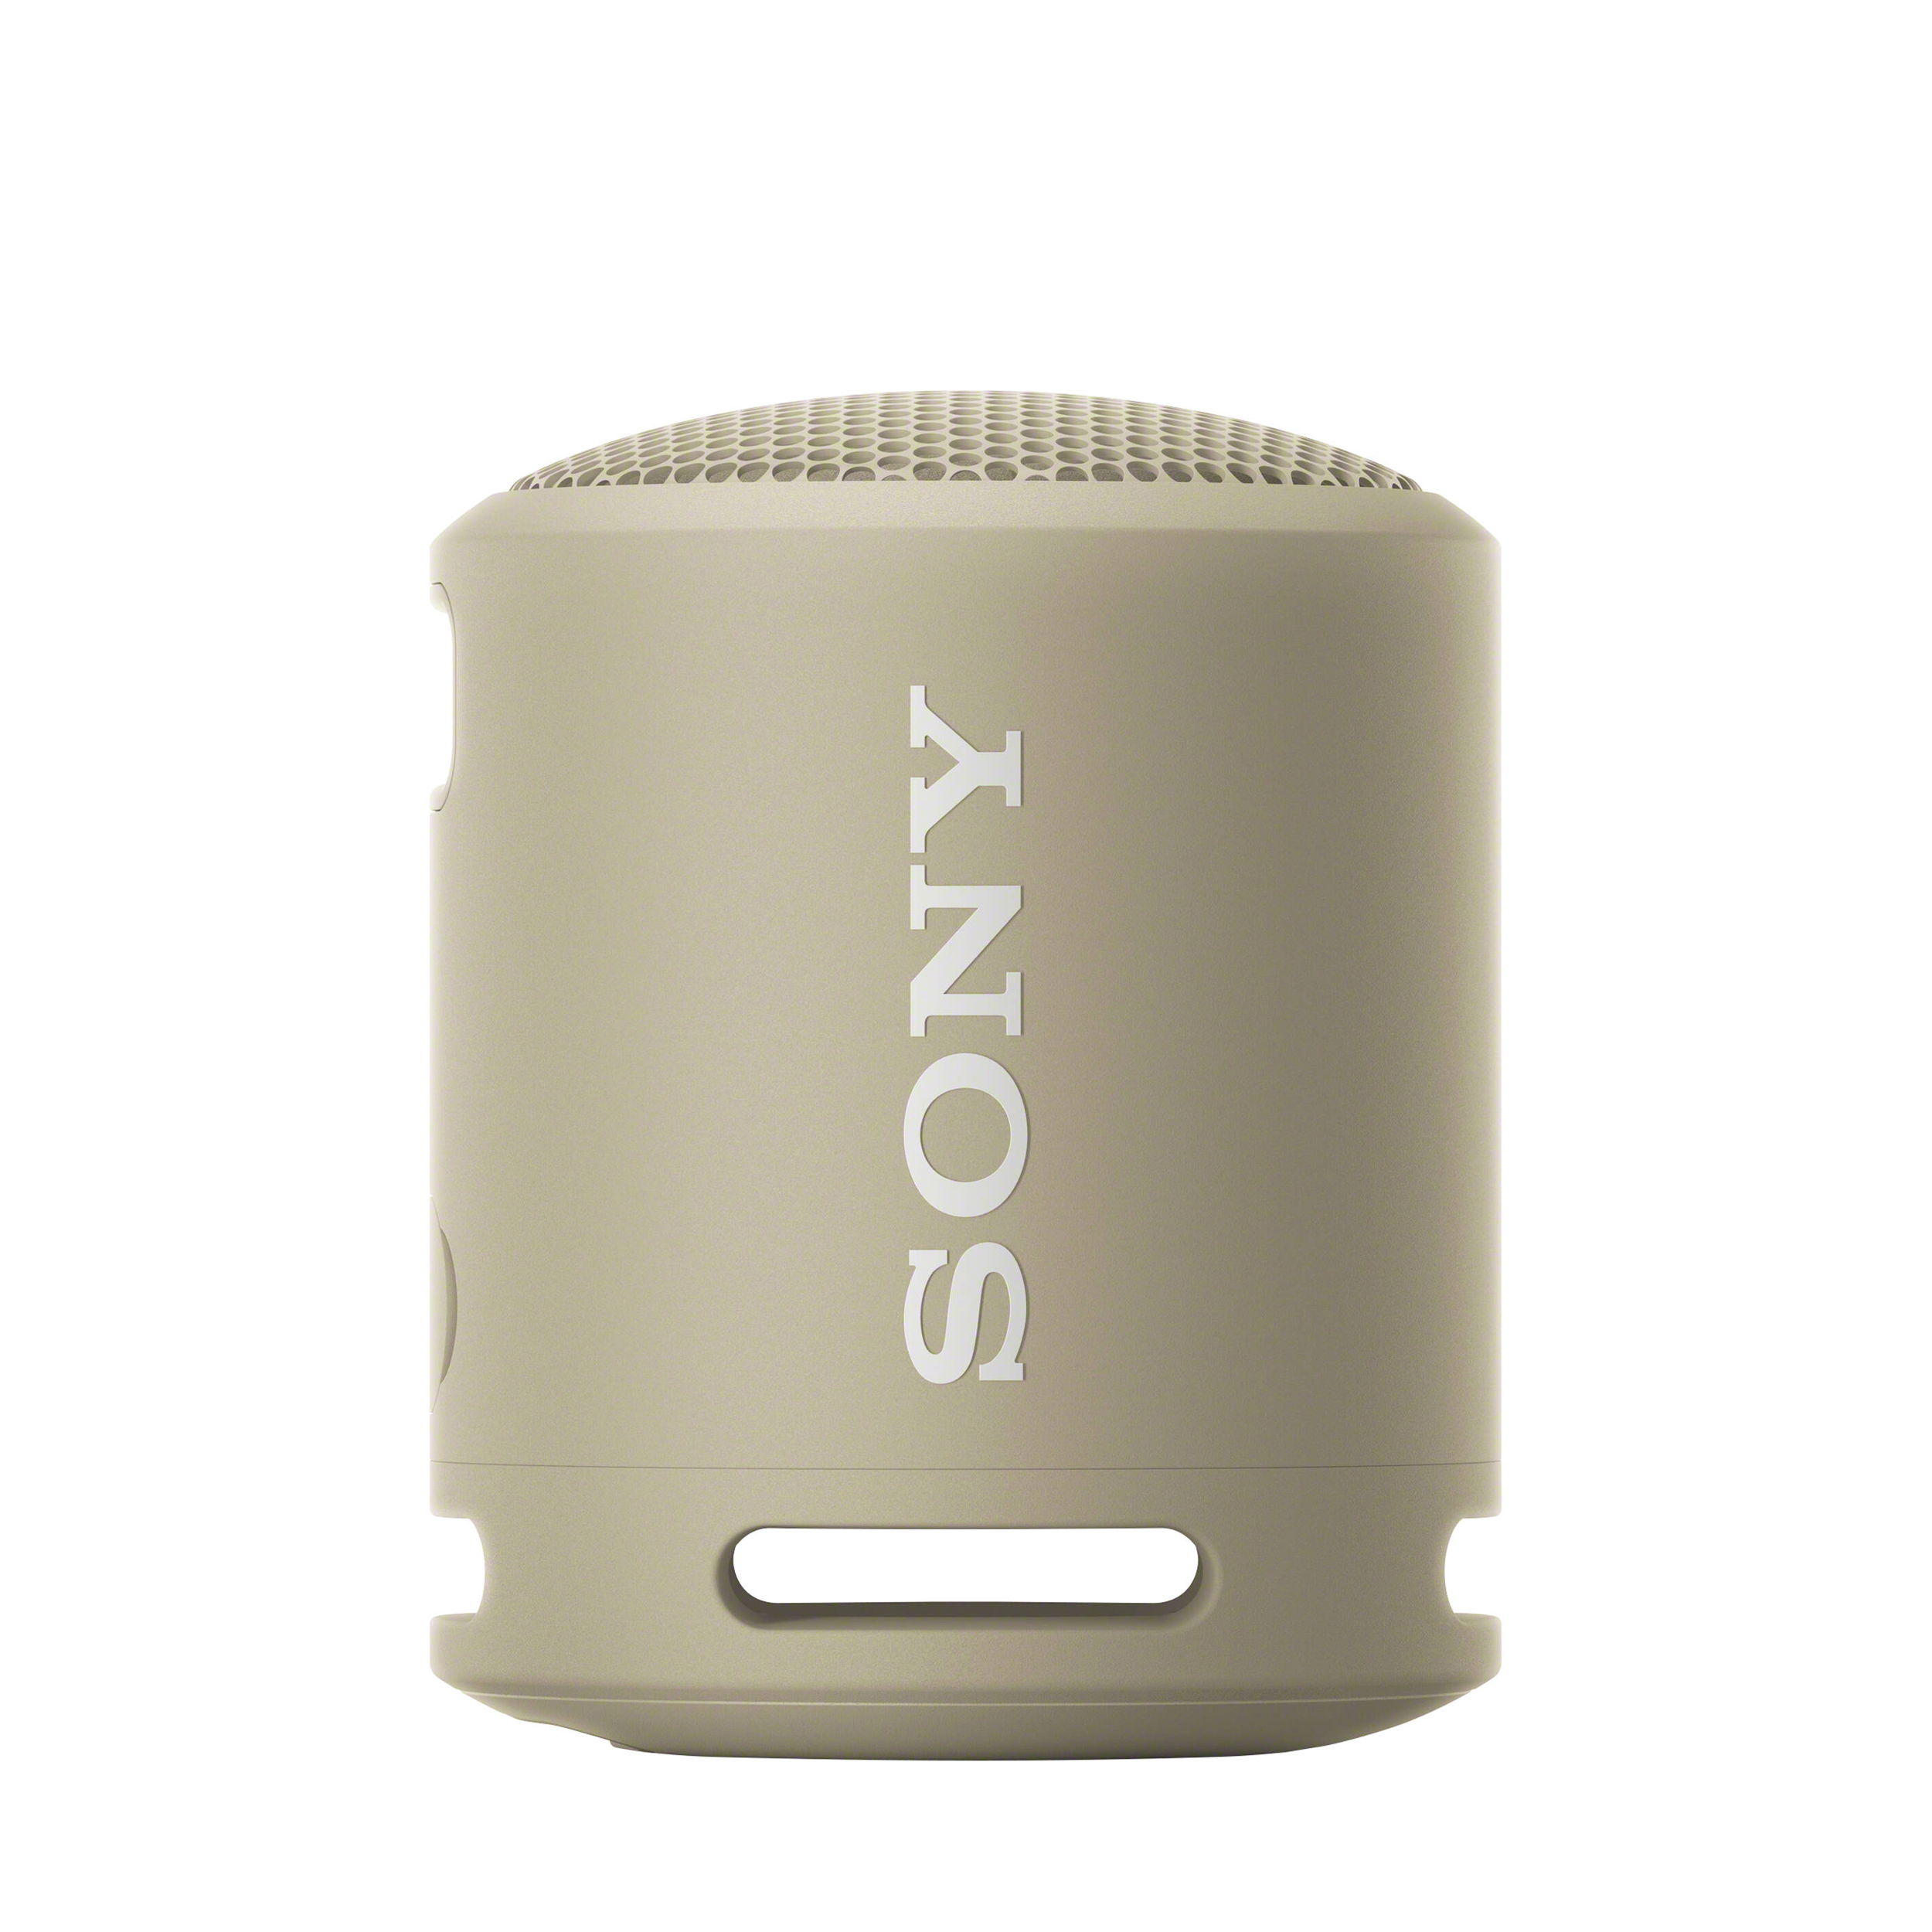 Sony XB13 EN TERMANDE SANS WIRESS PORTABLE EXTRA BASS